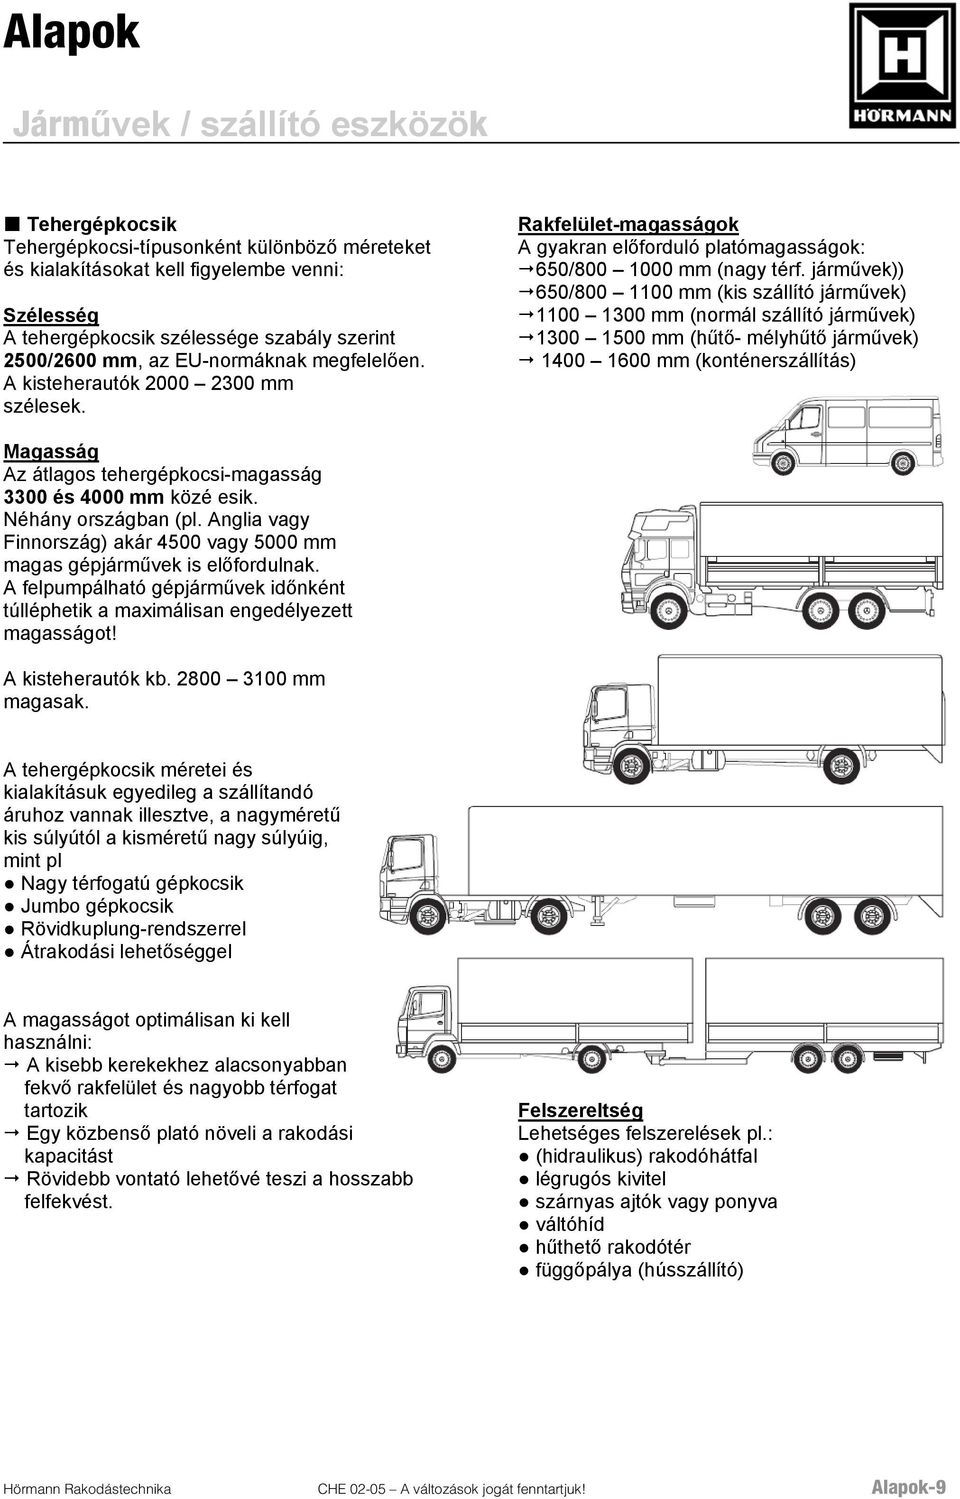 járművek)) 650/800 1100 mm (kis szállító járművek) 1100 1300 mm (normál szállító járművek) 1300 1500 mm (hűtő- mélyhűtő járművek) 1400 1600 mm (konténerszállítás) Magasság Az átlagos